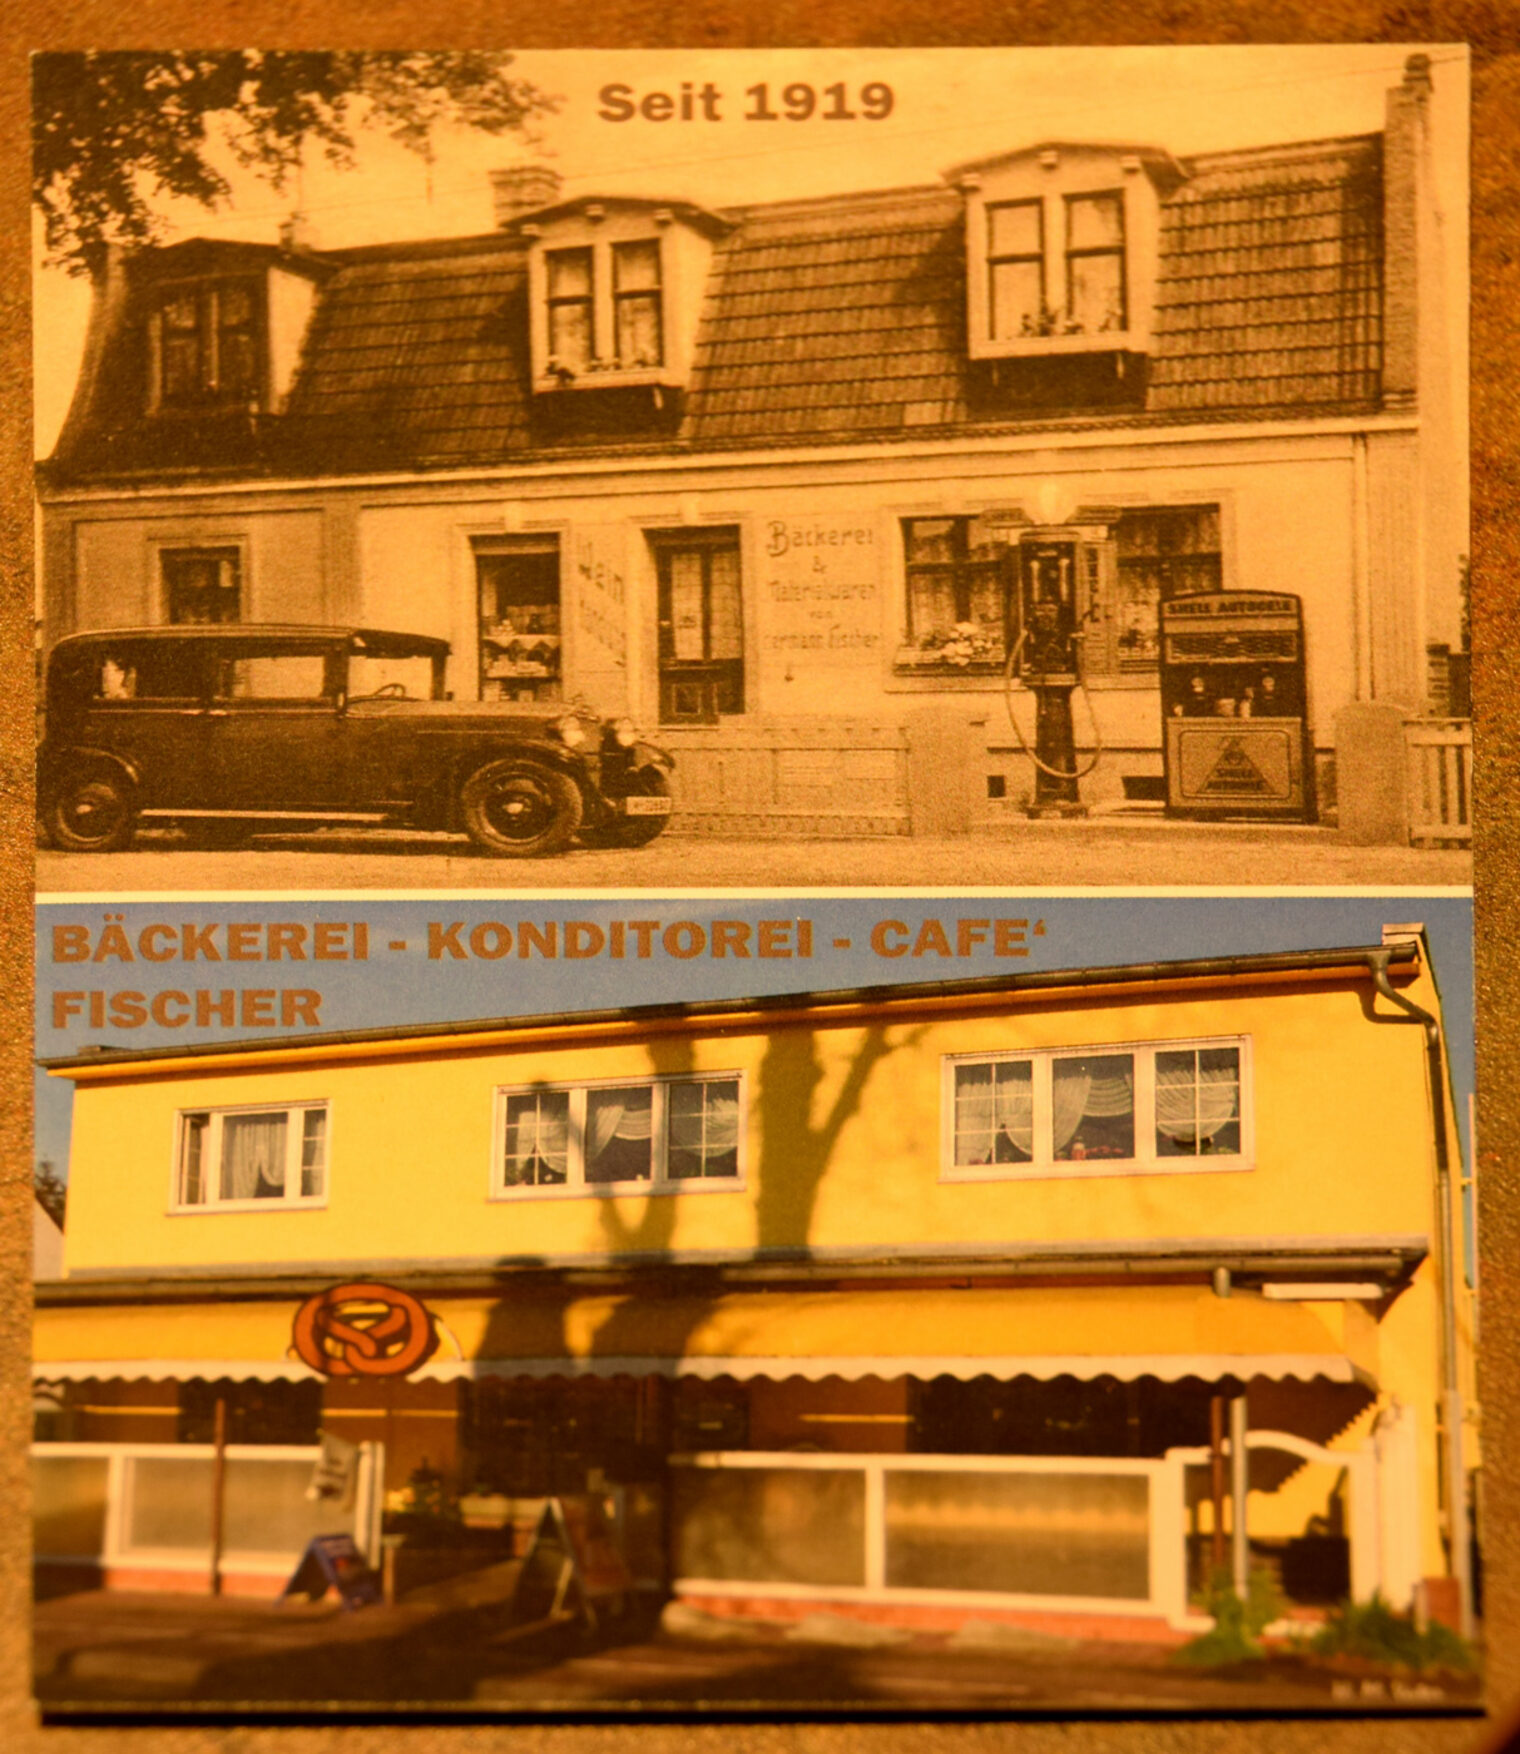 Bäckerei Konditorei Cafe Fischer seit 1919